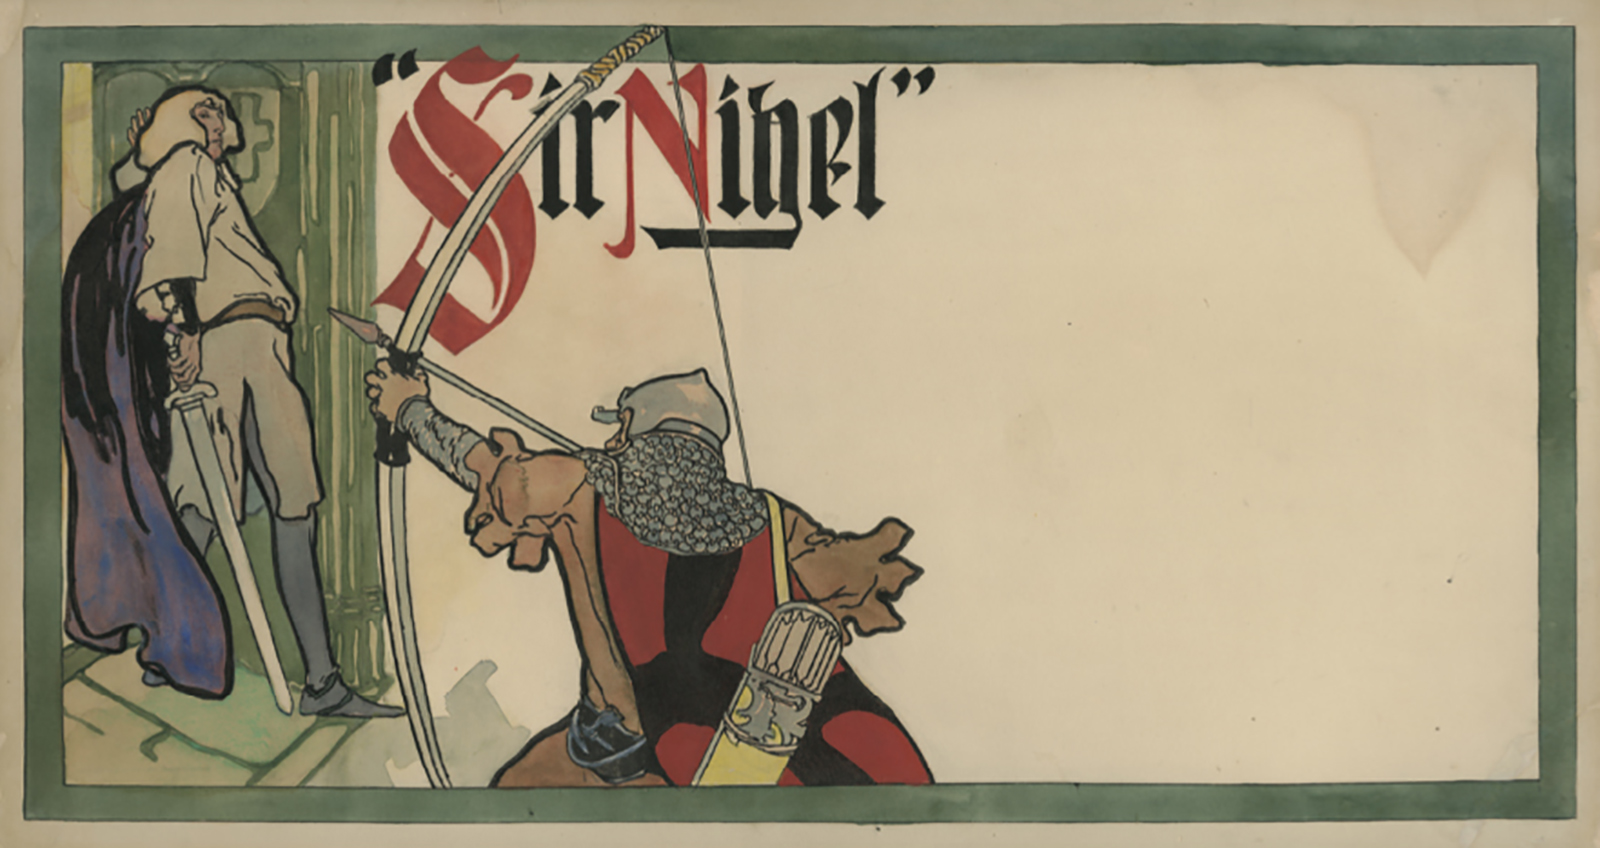 original artwork for "Sir Nigel"